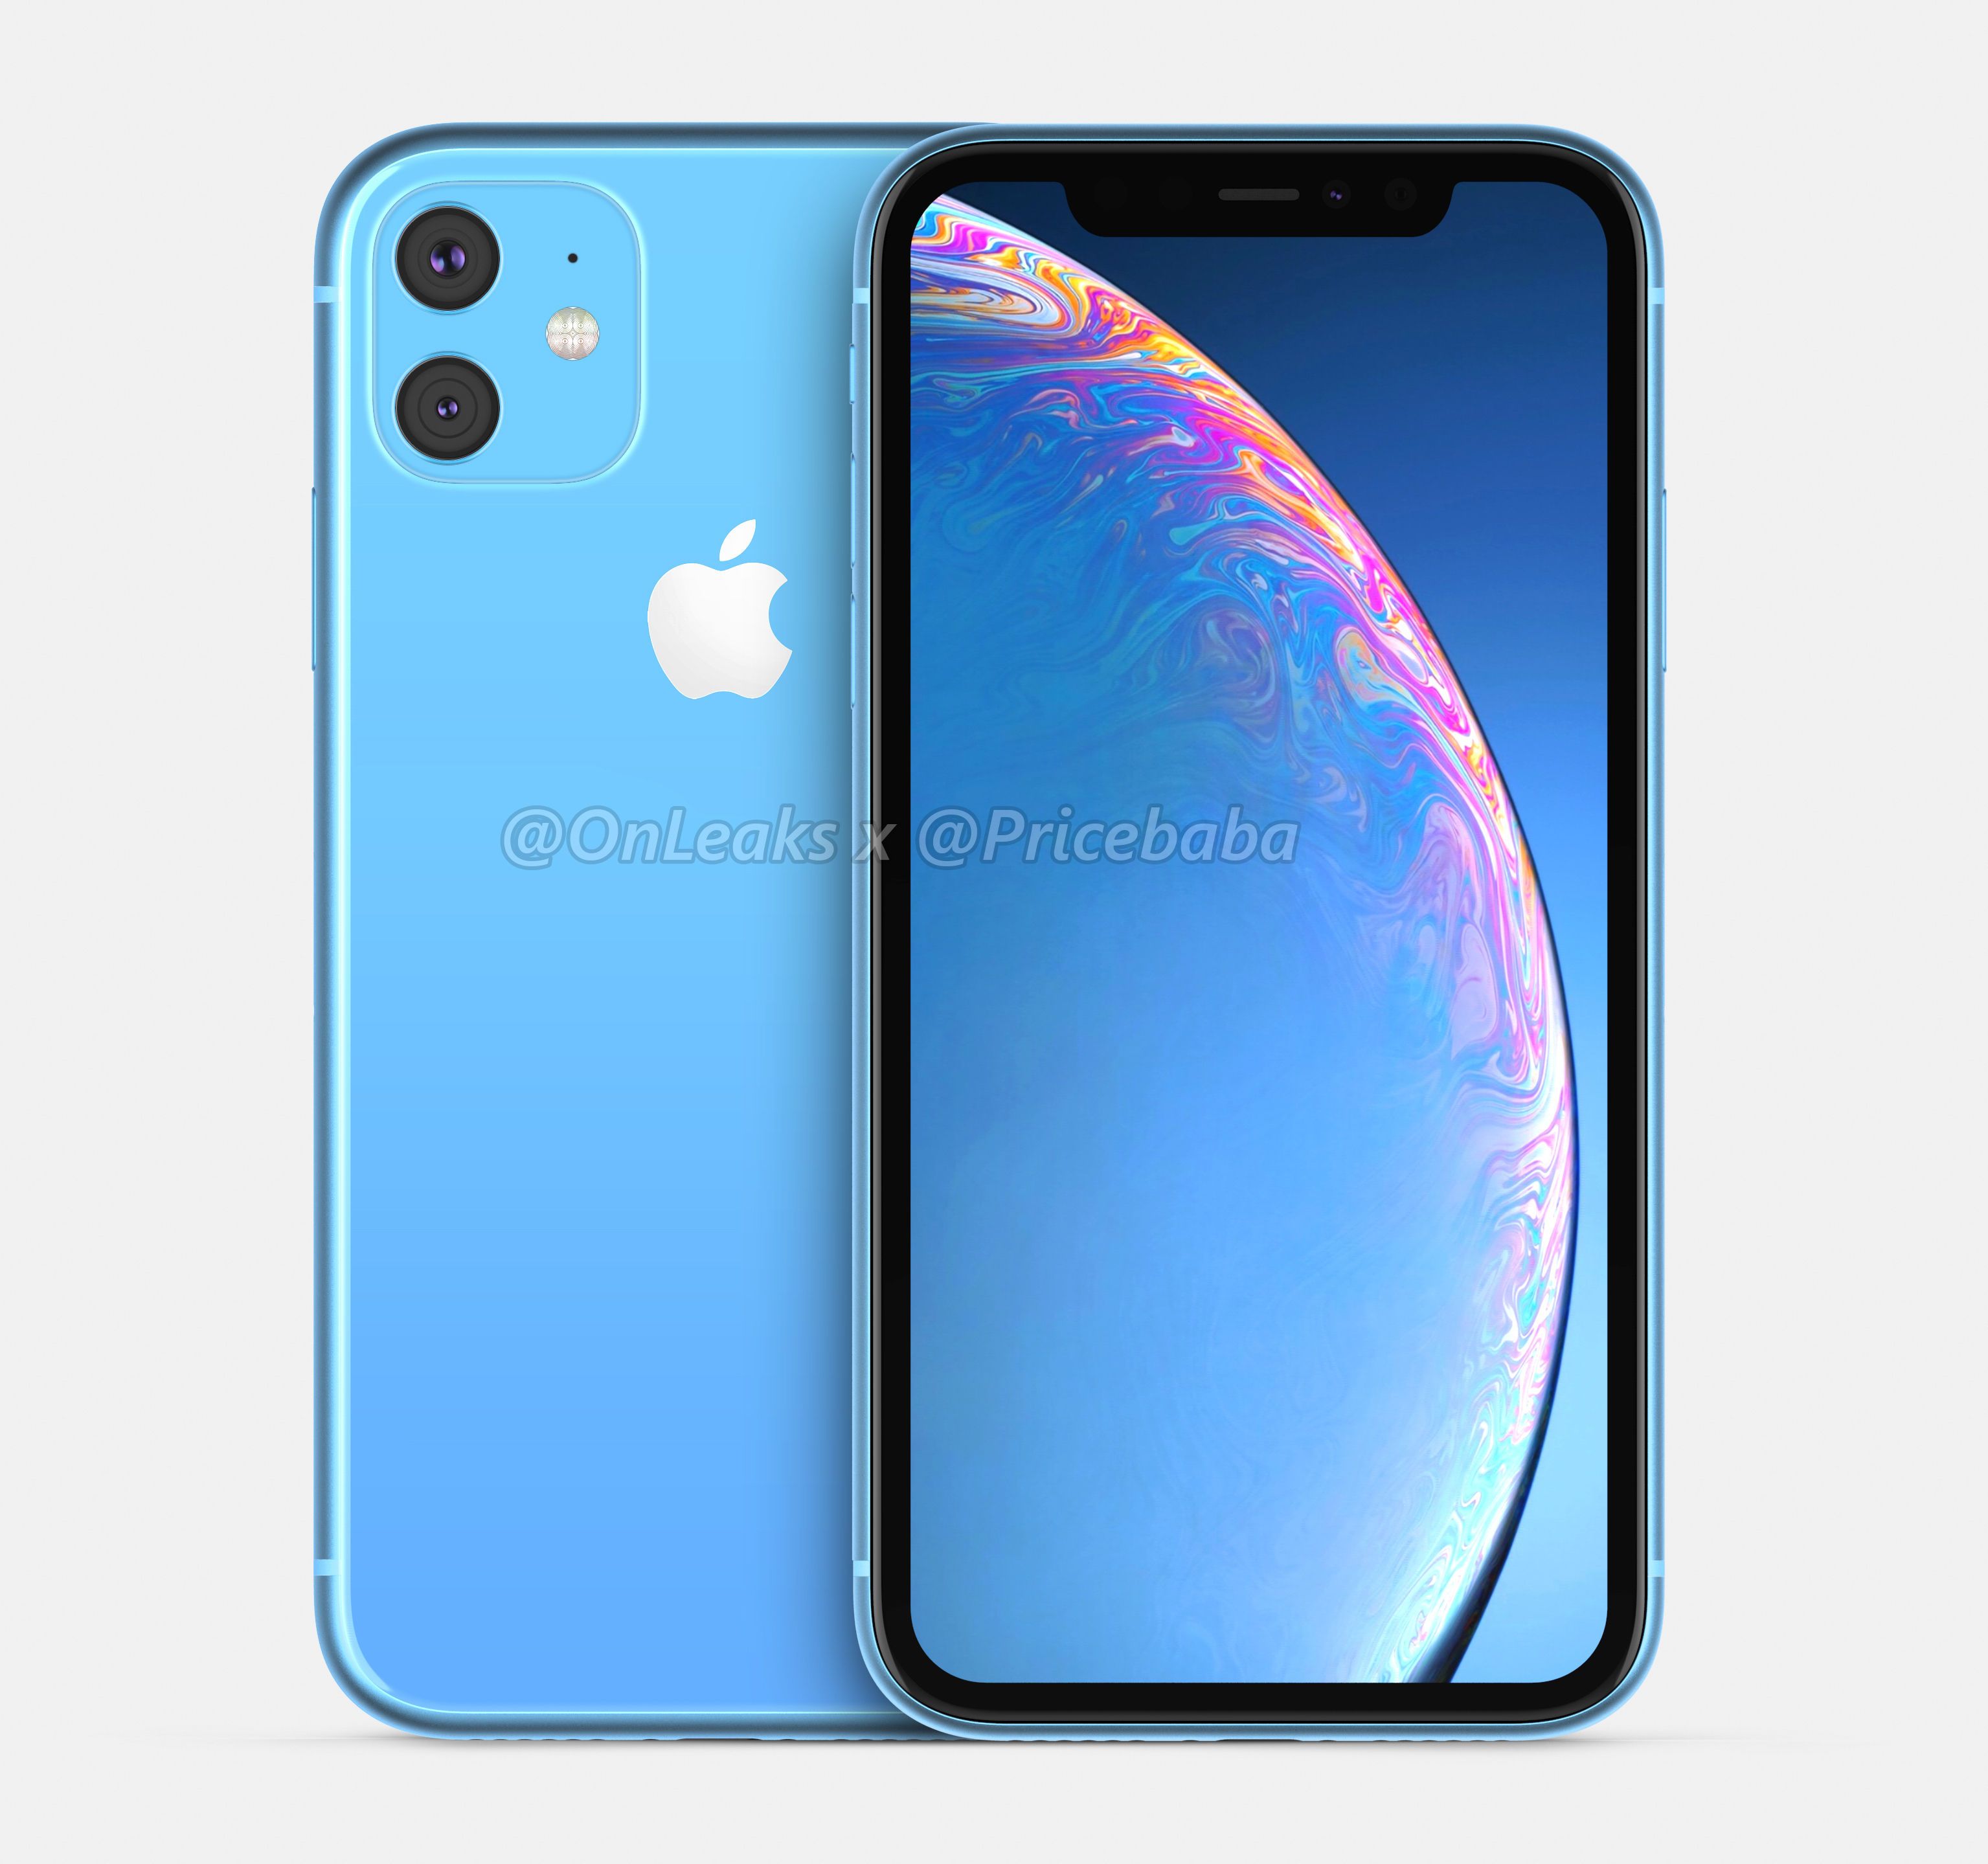 2019 iPhone XR